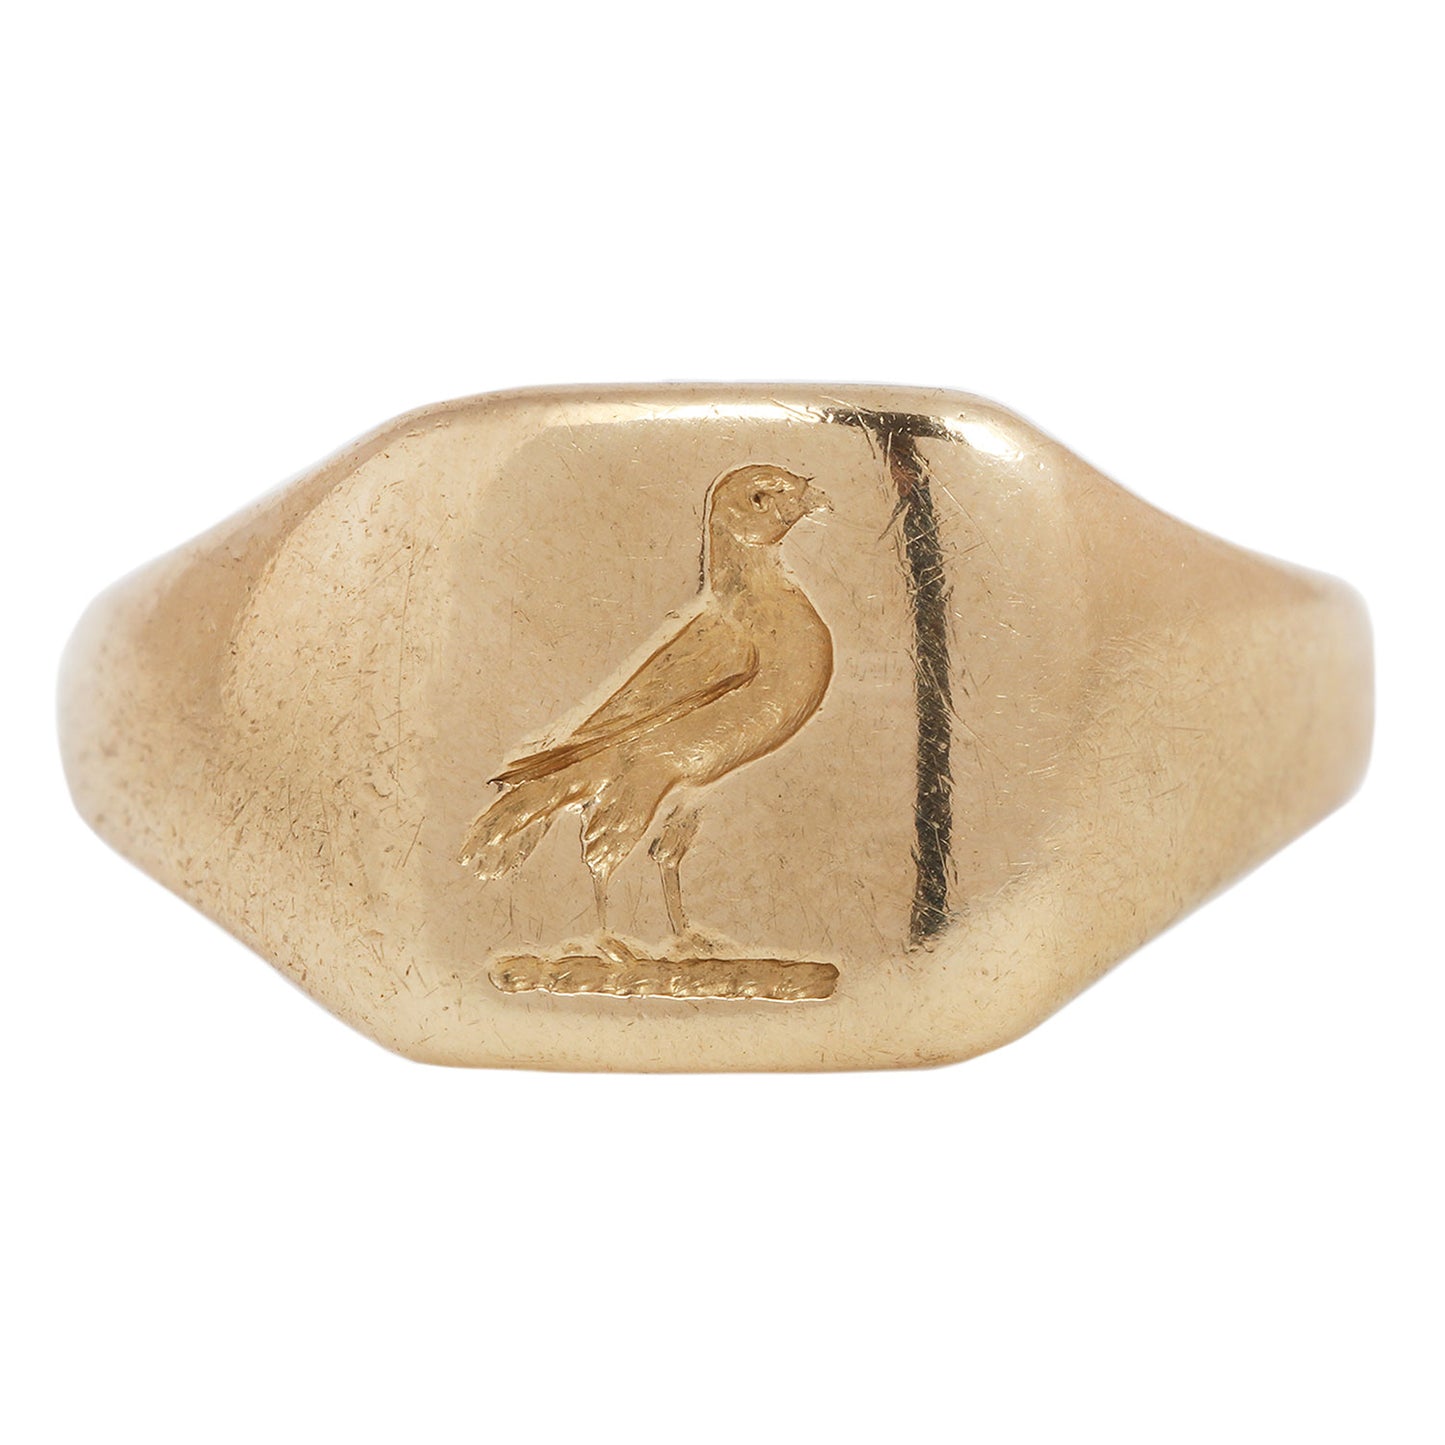 Homing Bird Signet Ring